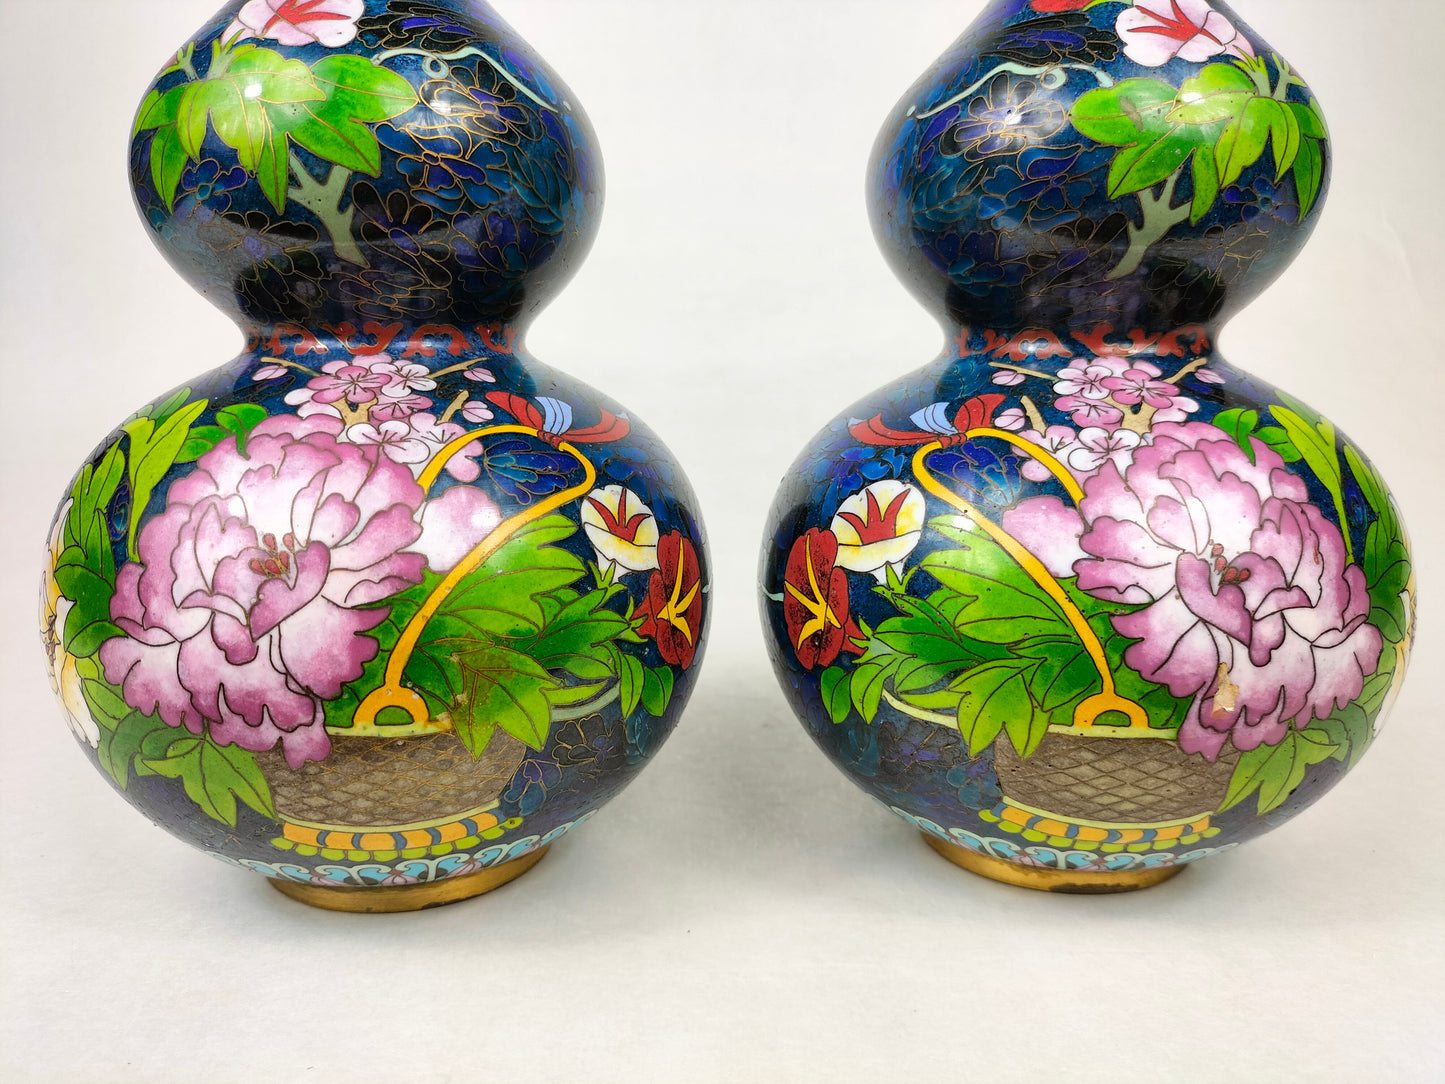 Cặp bình hoa hình bầu đôi của Trung Quốc được trang trí bằng giỏ hoa // thế kỷ 20